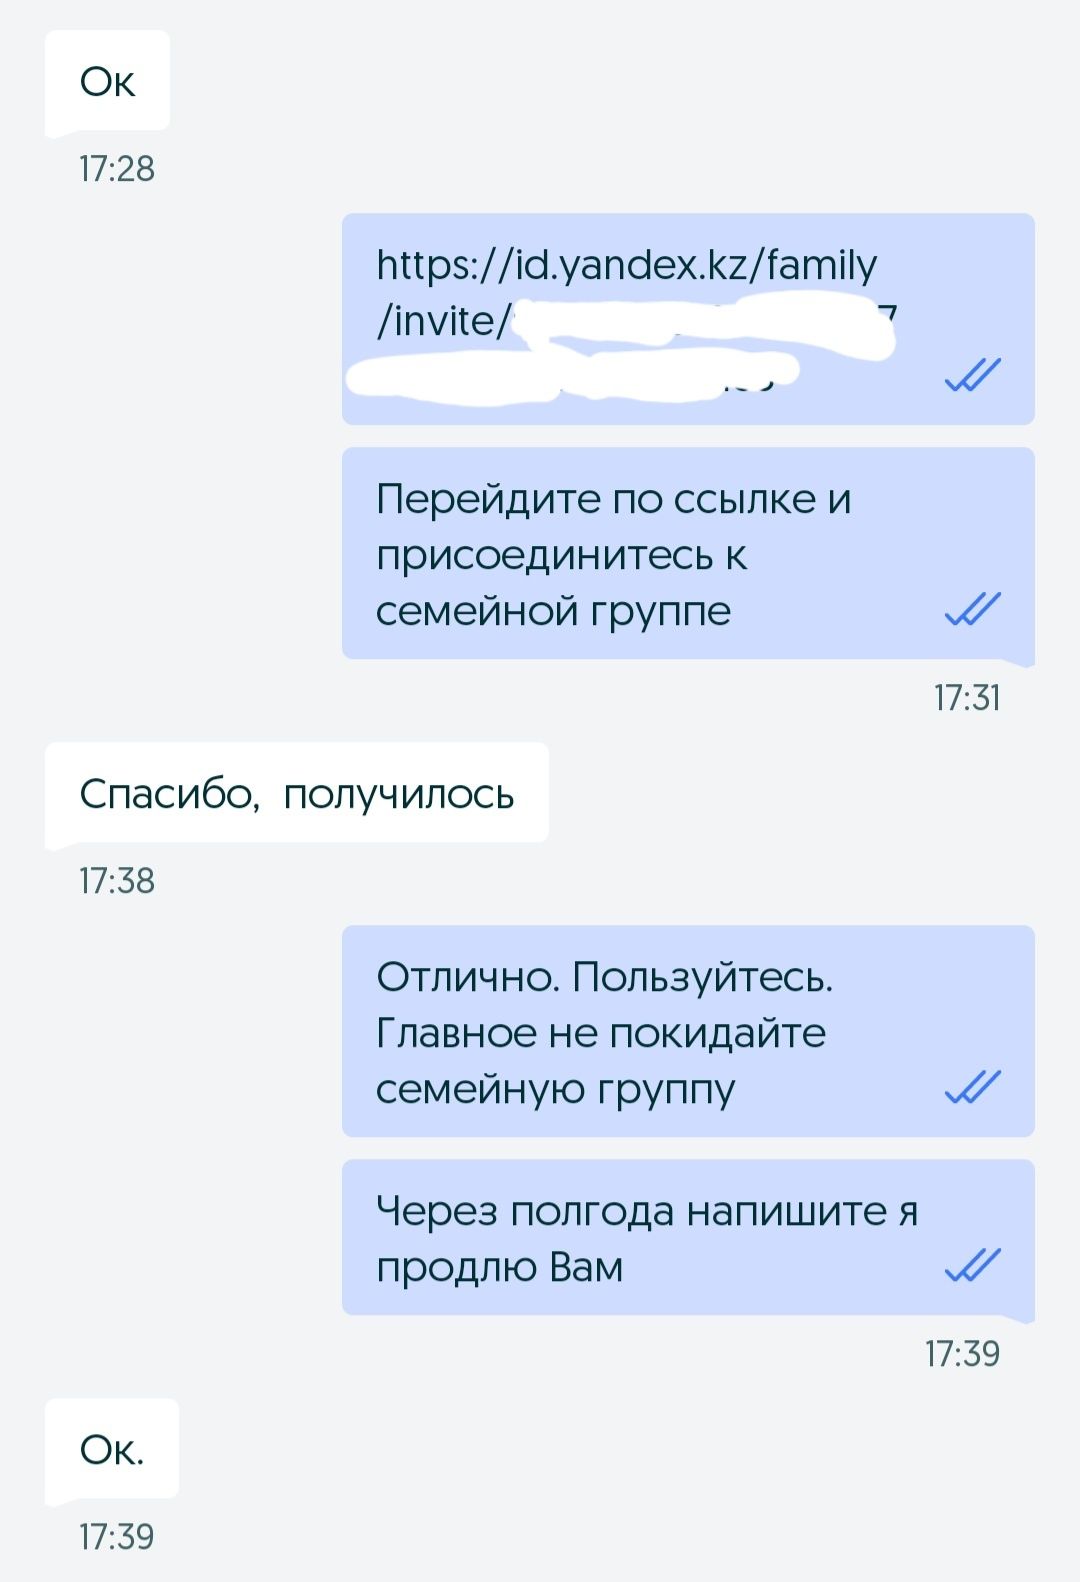 Яндекс Плюс на 6 месяцев. Подписка